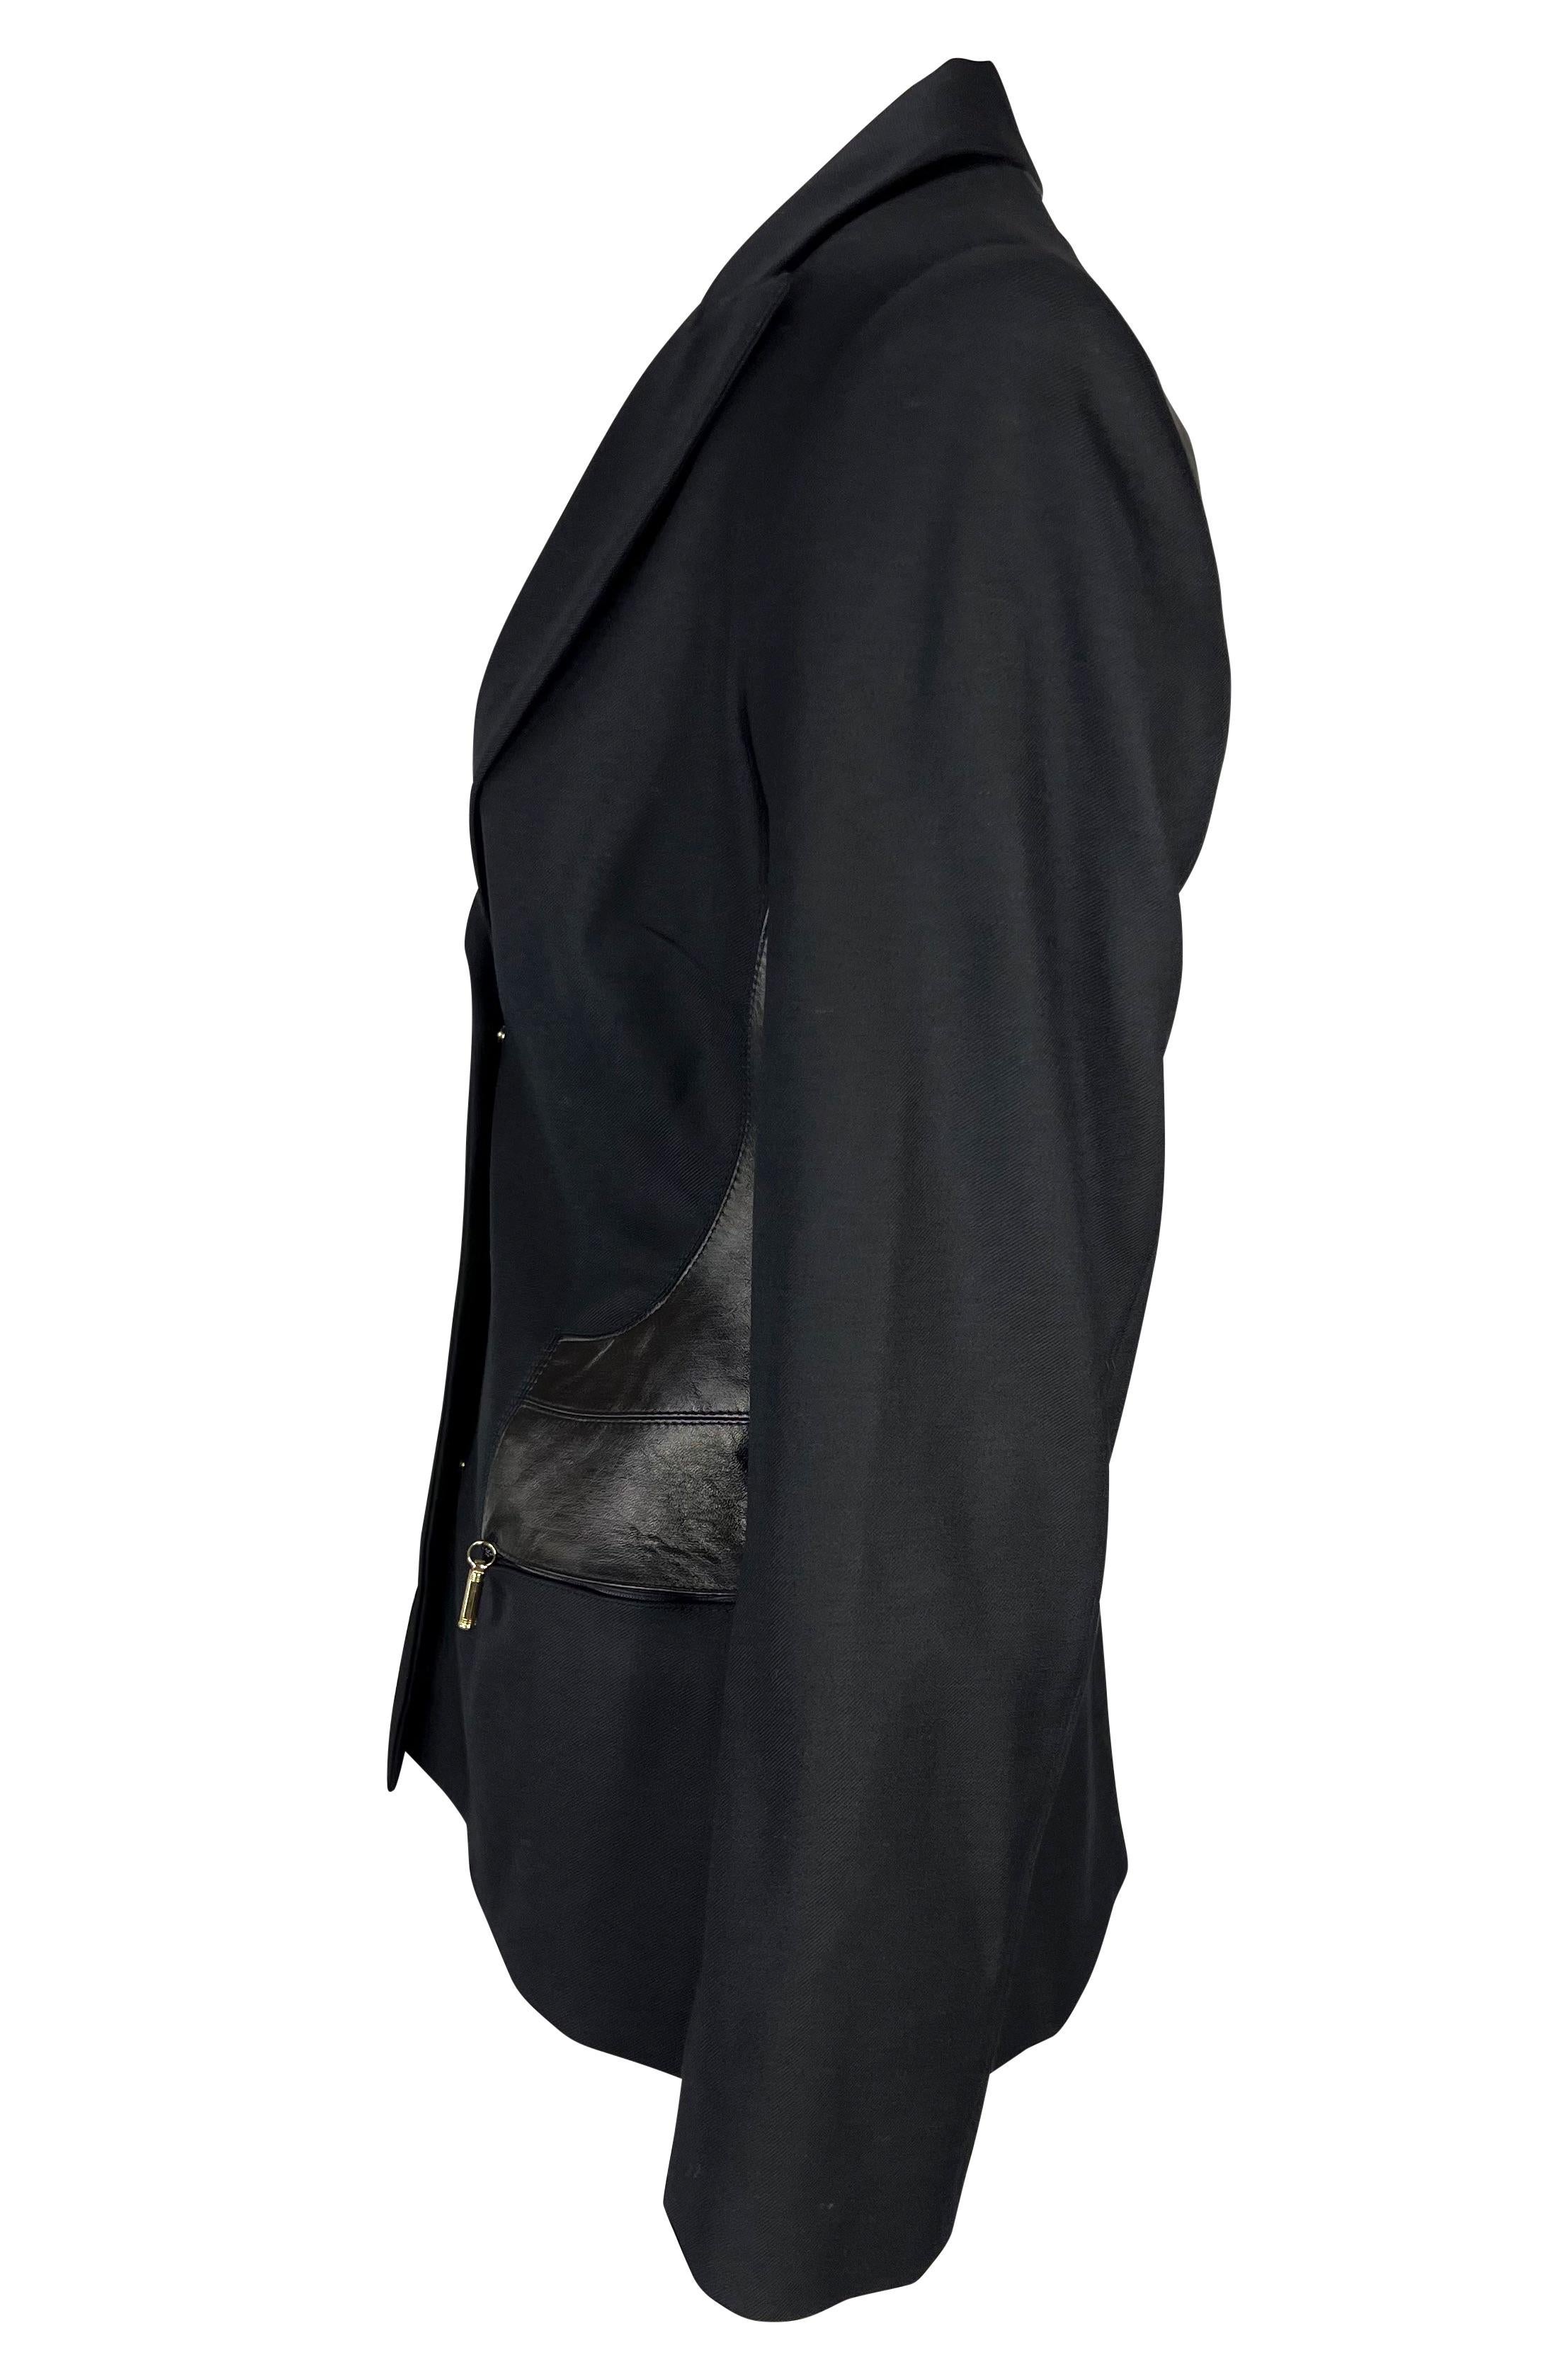 Wir präsentieren eine fabelhafte schwarze Lederjacke von Gianni Versace Couture, entworfen von Donatella Versace. Dieser schöne Blazer aus der Herbst/Winter-Kollektion 2001 verfügt über verdeckte Knöpfe auf der Vorderseite und Reißverschlusstaschen